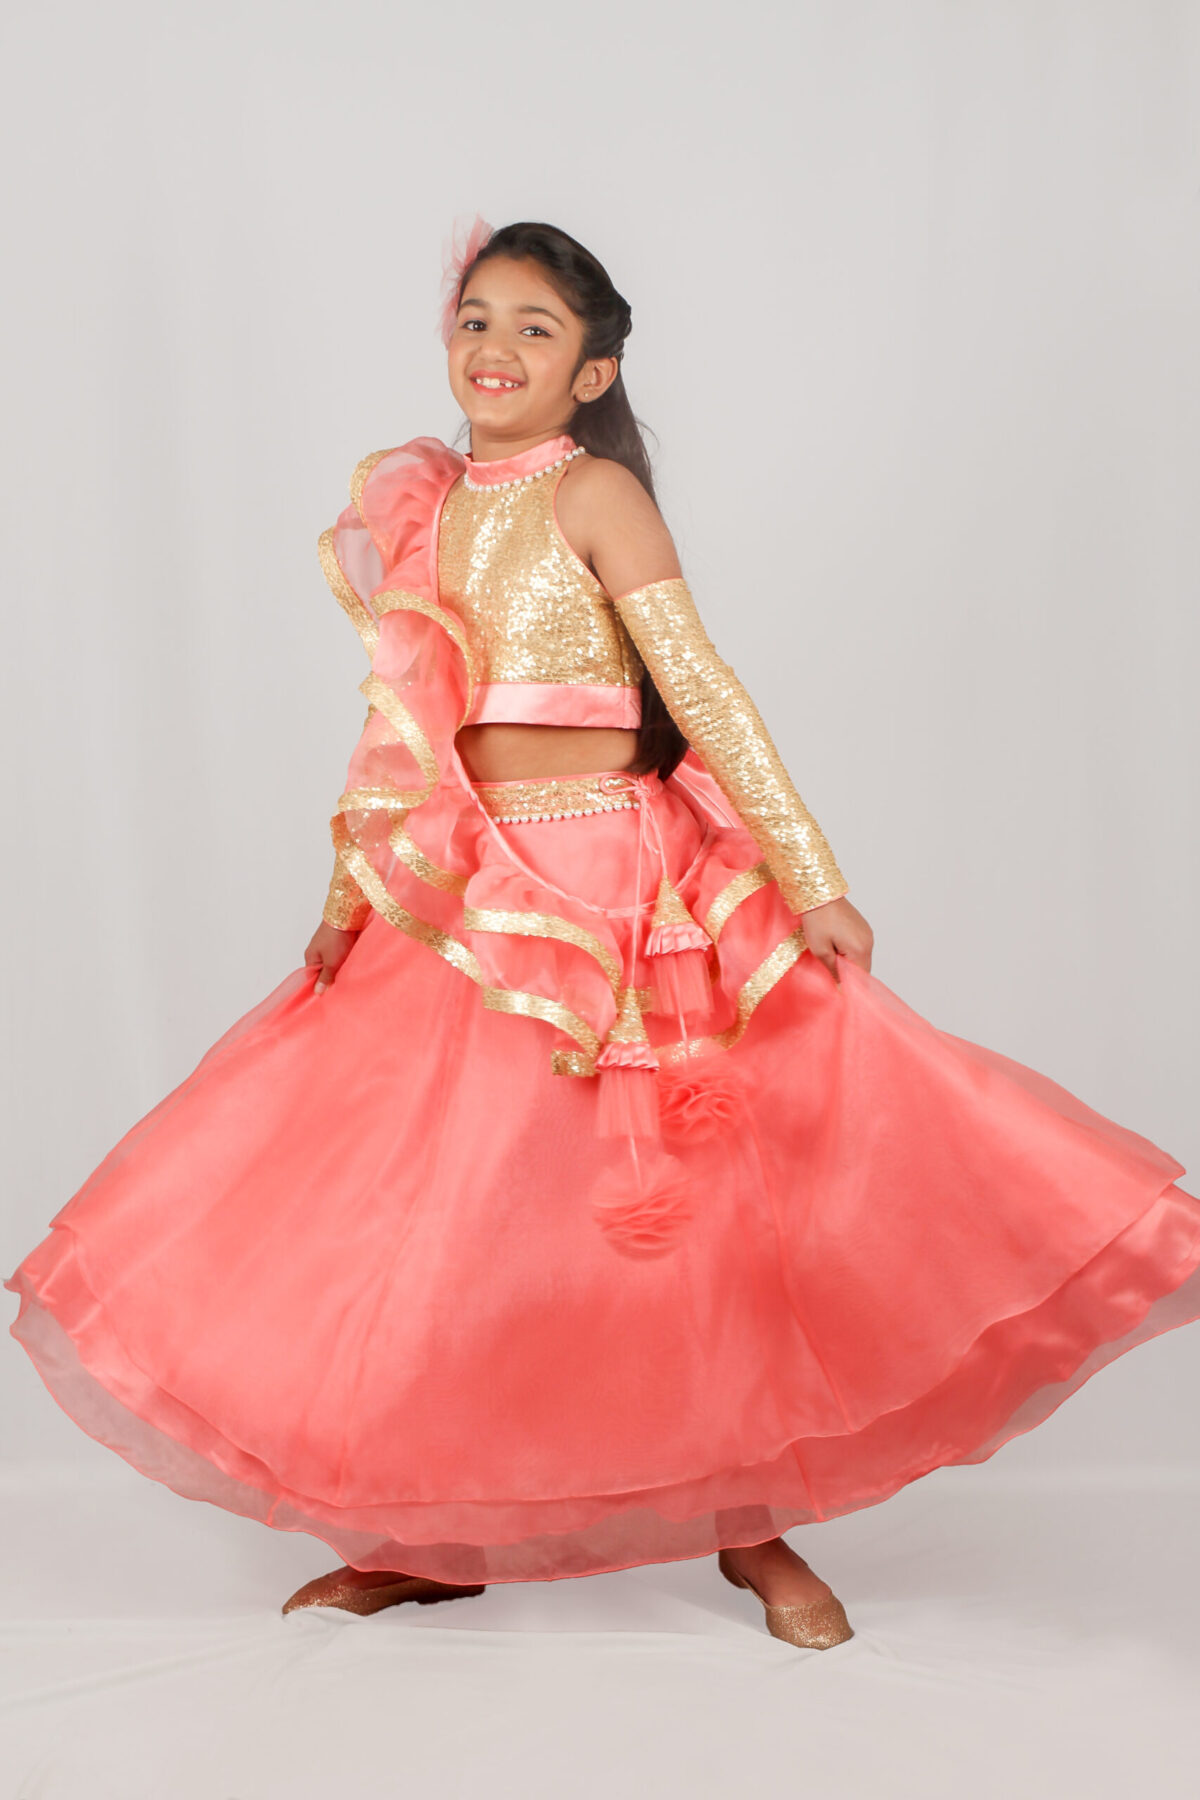 IMG 9988 3 scaled Blush Pink Princess style Lehenga Choli with Potli Bag